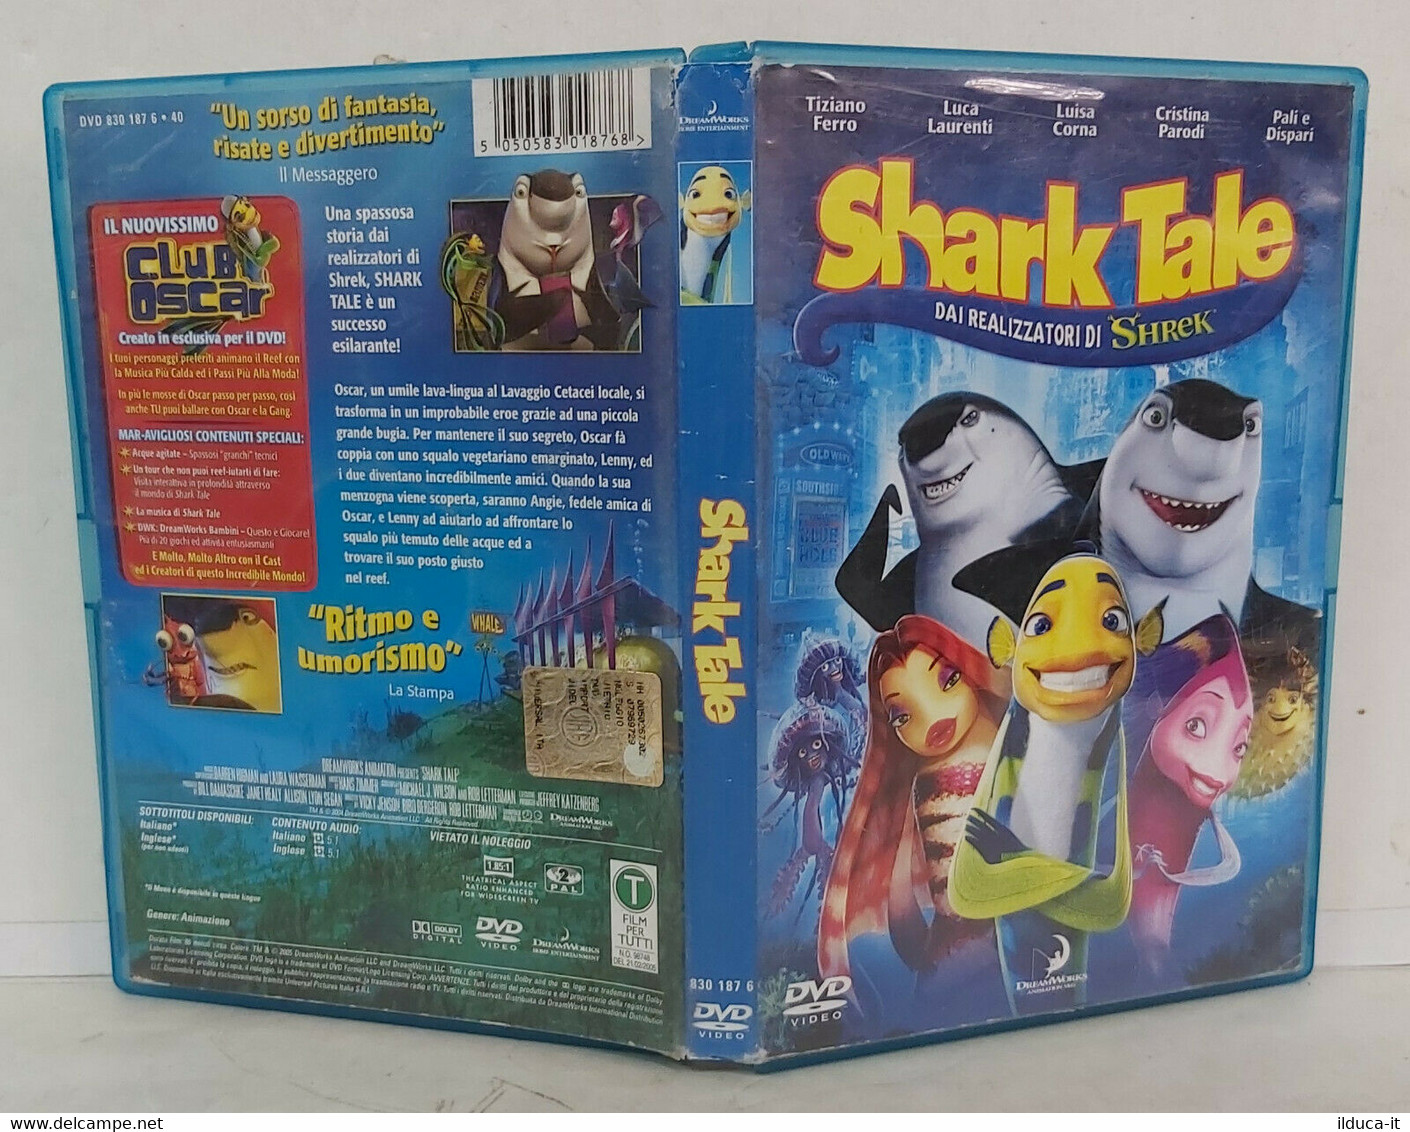 00340 DVD - Shark Tale - DreamWorks - Animation